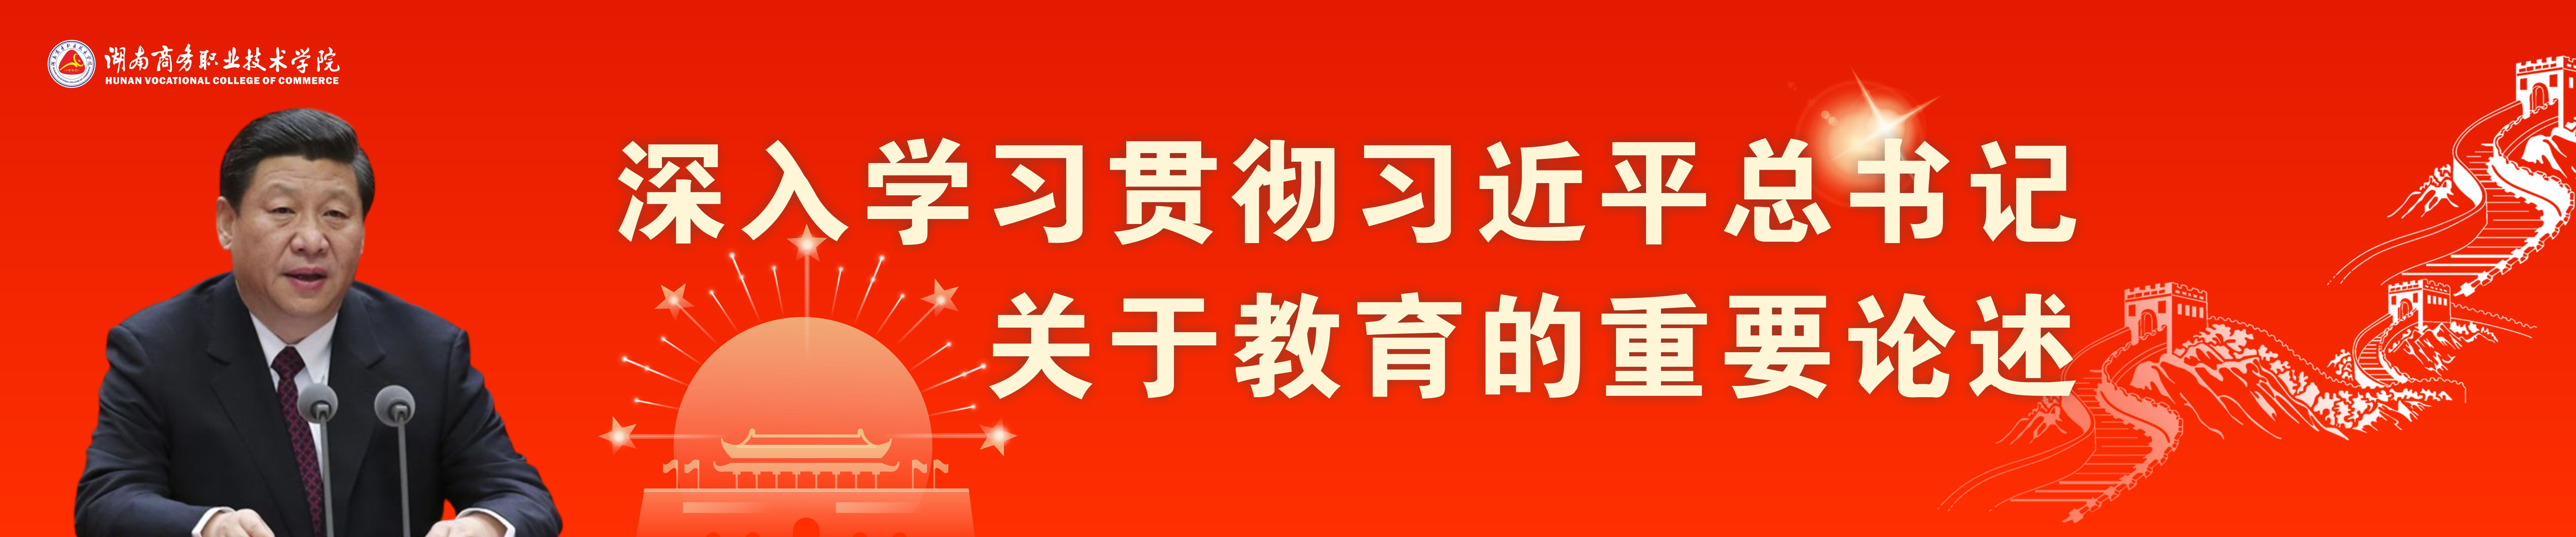 习近平总书记日博官网_日博体育-中国竞彩网在线推荐教育的重要论述